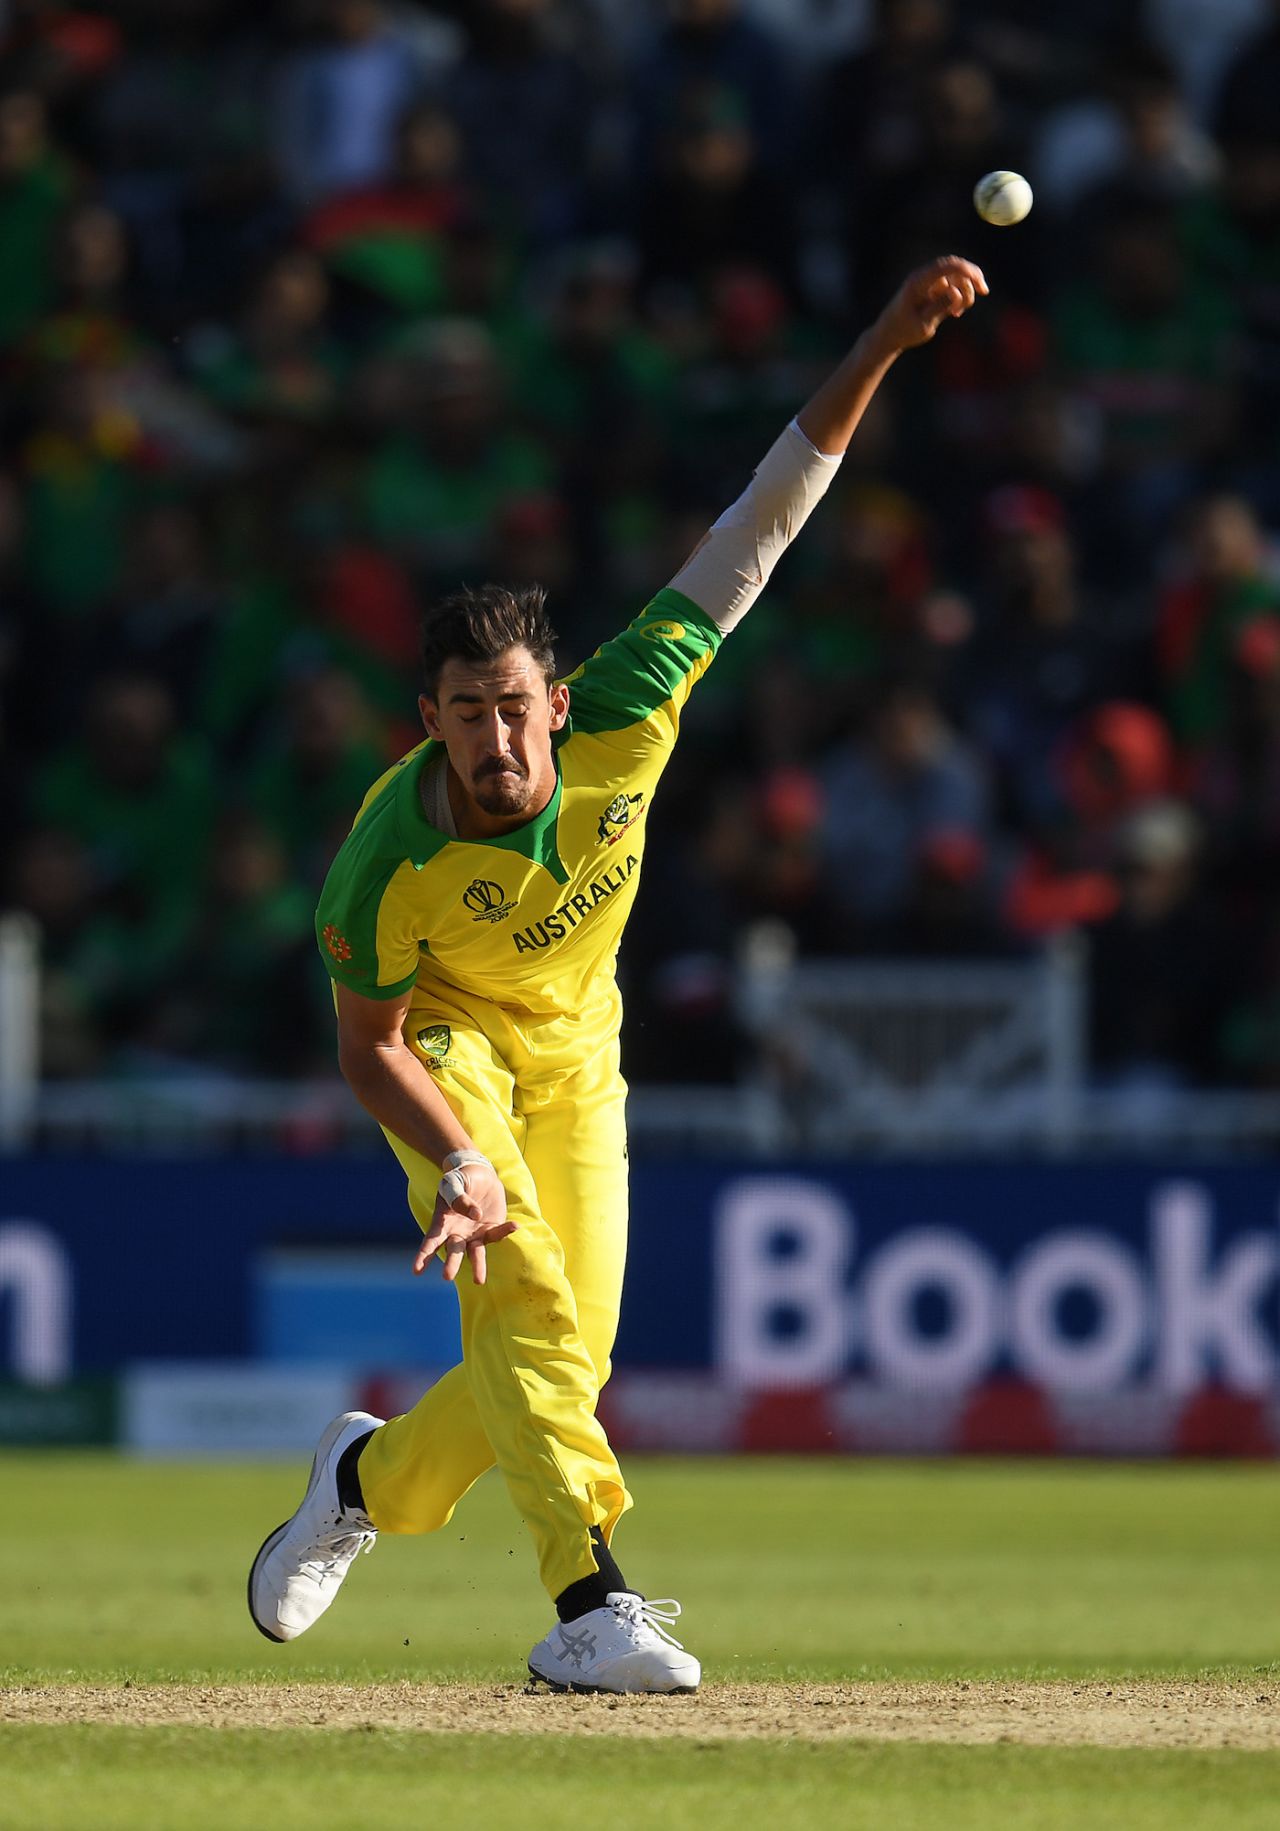 Mitchell Starc bowls, Australia v Bangladesh, World Cup 2019, Trent Bridge, June 20, 2019